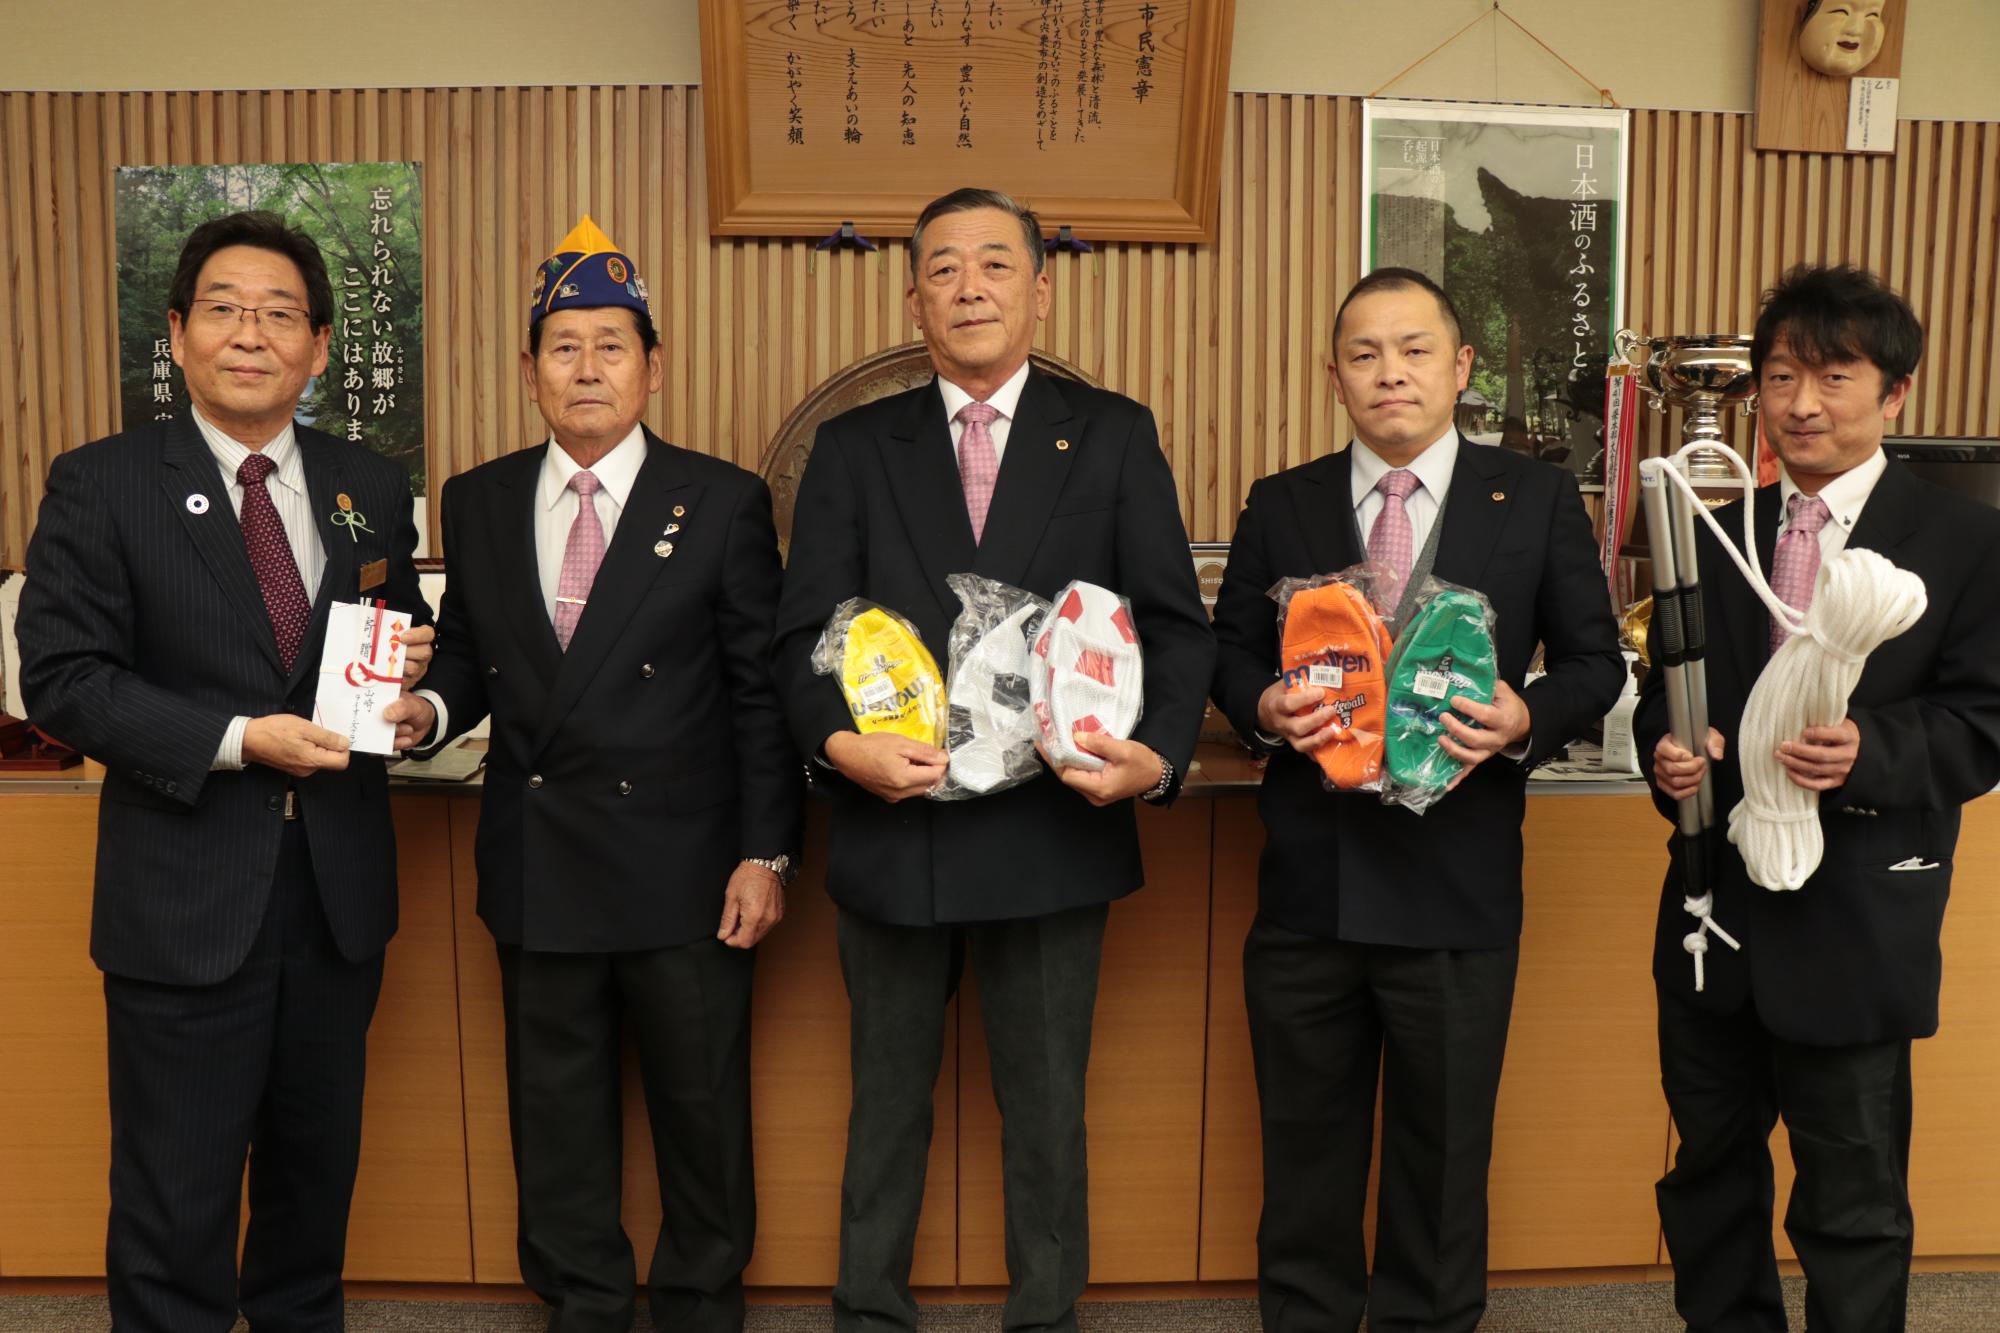 左から福元市長、右隣に目録を手渡す小林健志さんほか山崎ライオンズクラブのみなさんの写真